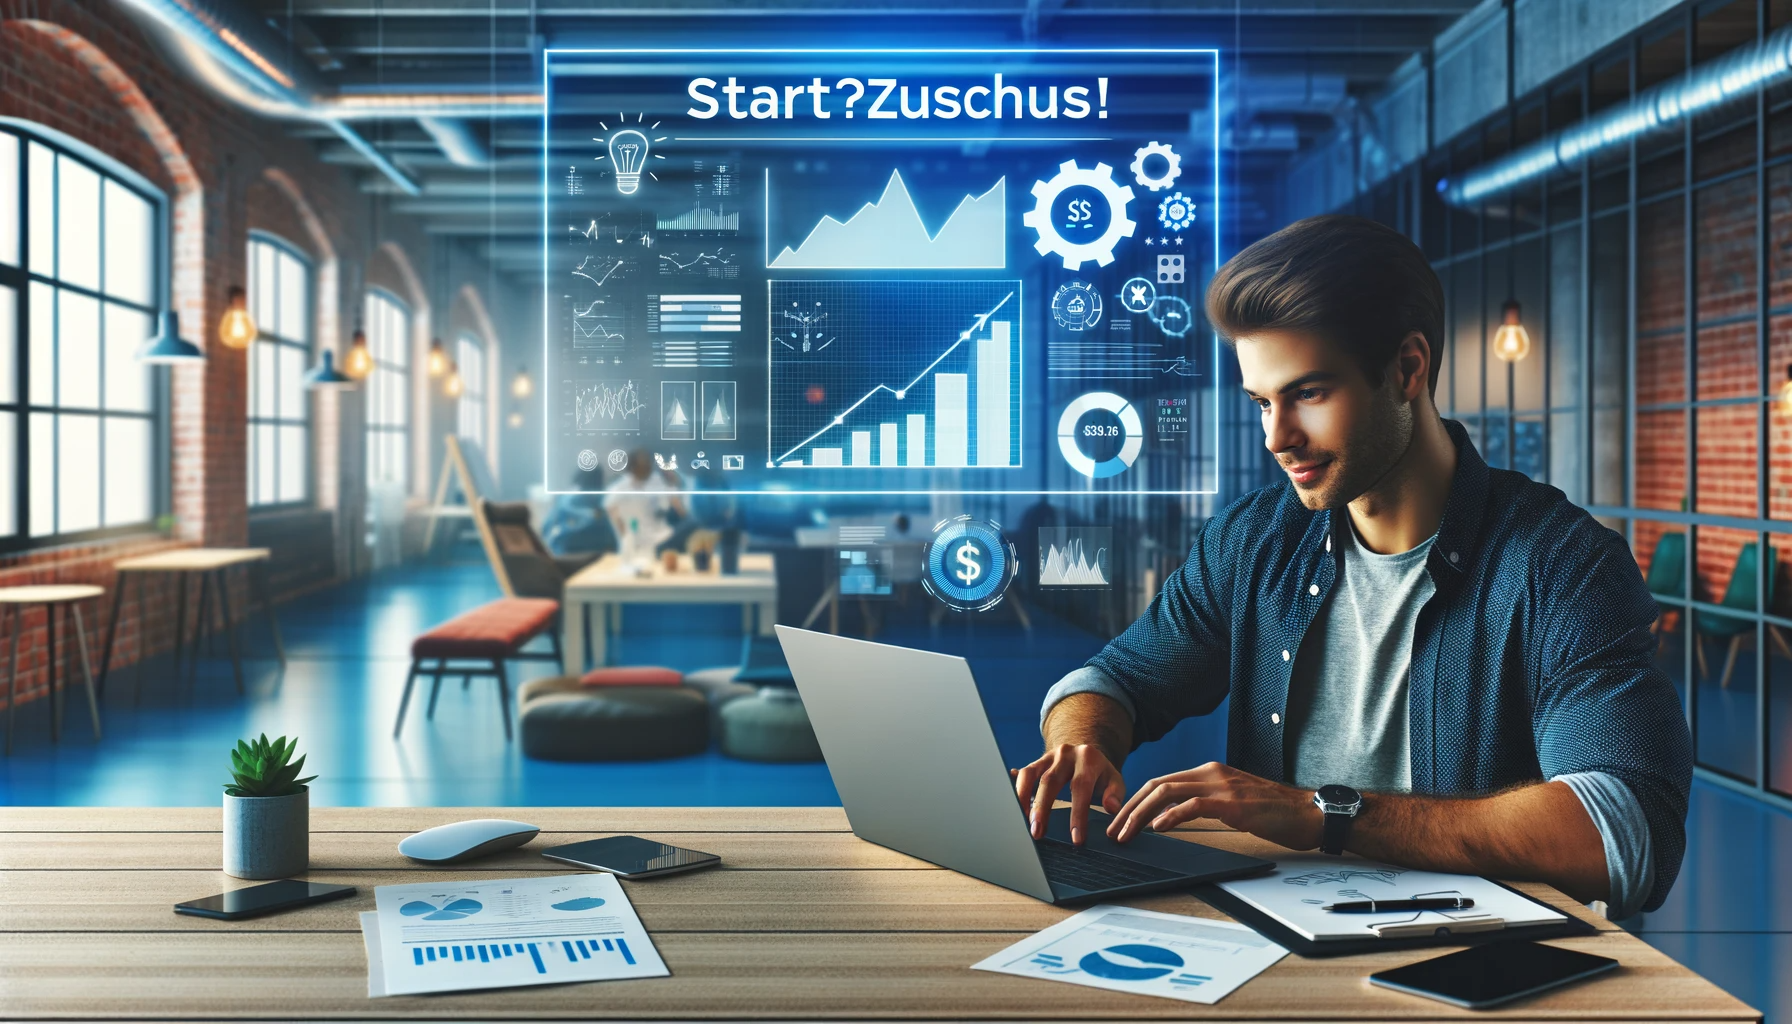 Ein junger Unternehmer arbeitet in einem modernen Startup-Büro an seinem Laptop mit sichtbaren Grafiken und einem erfolgreichen Förderantragsformular auf dem Bildschirm. Im Hintergrund ist das lebendige Büroumfeld mit dem korrekt geschriebenen 'Start?Zuschuss!' Logo auf einem Poster zu sehen.